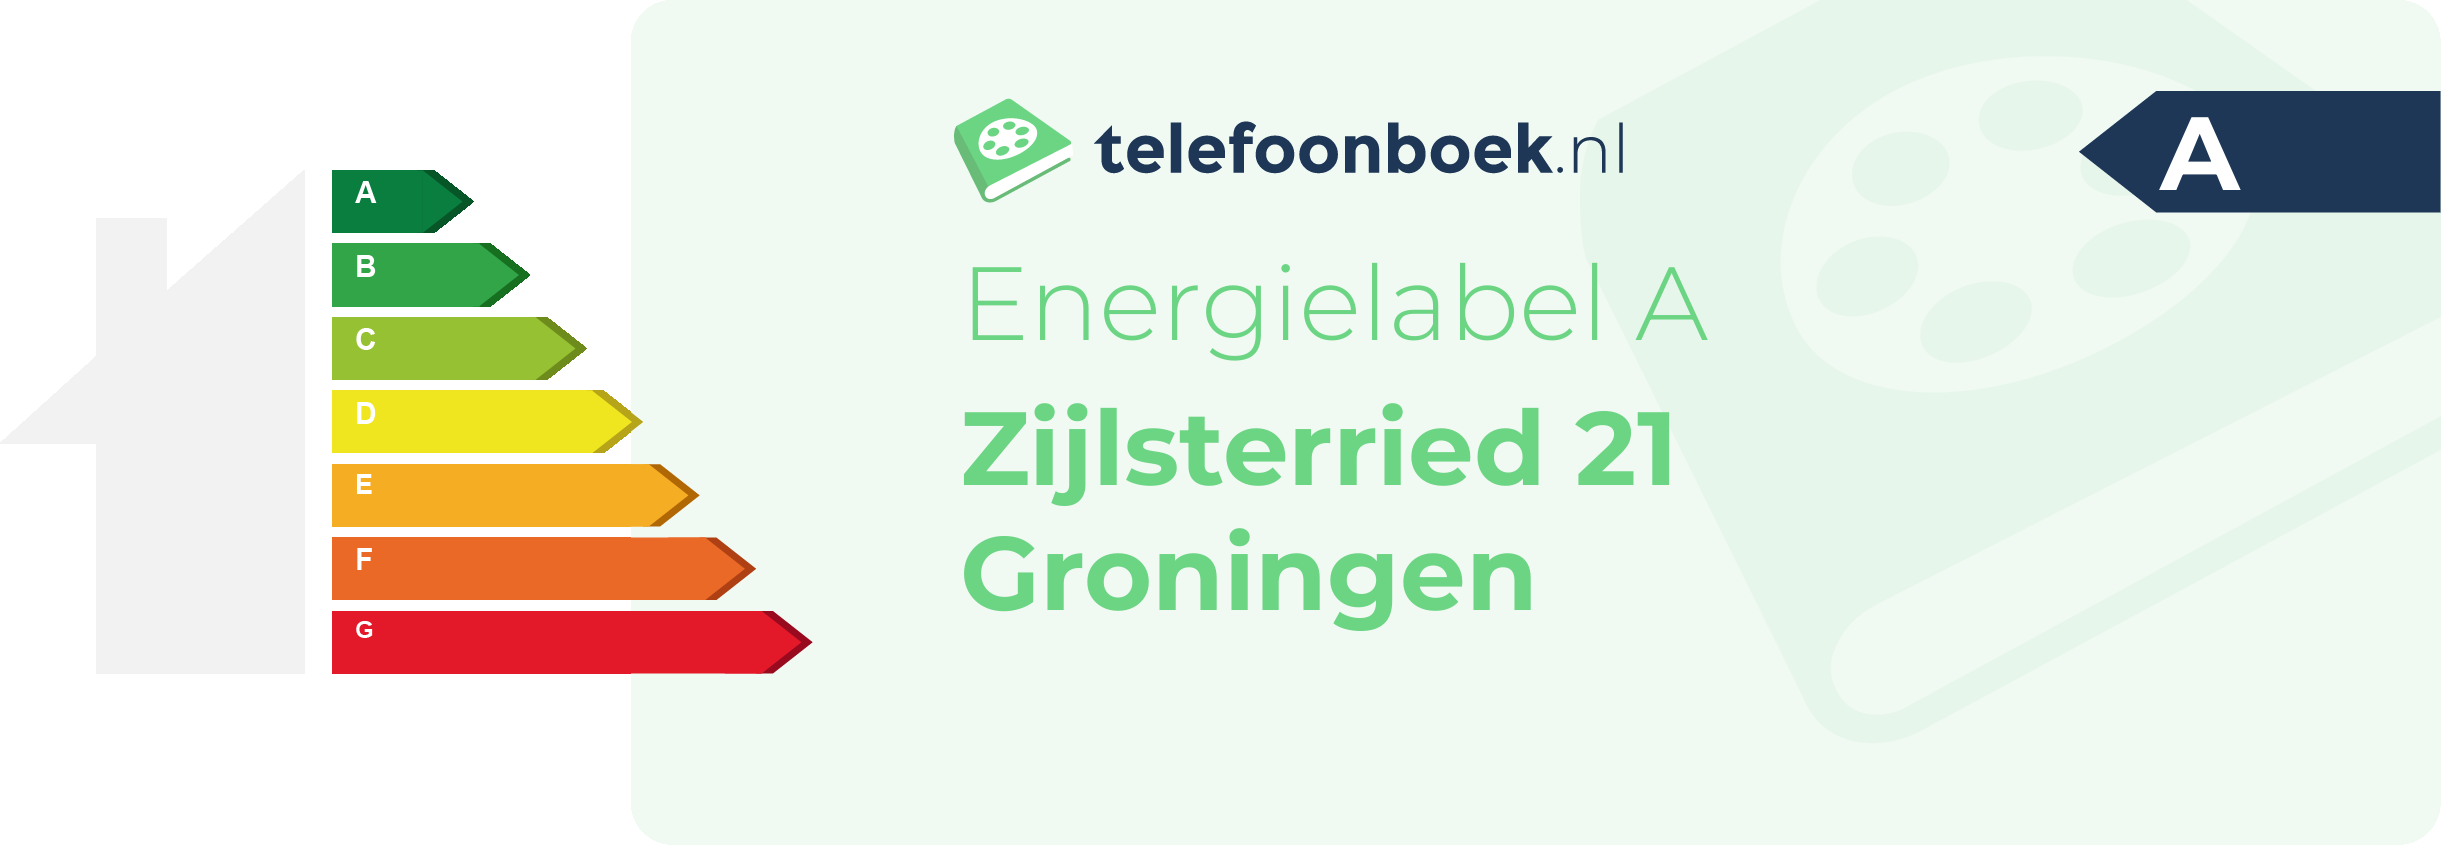 Energielabel Zijlsterried 21 Groningen